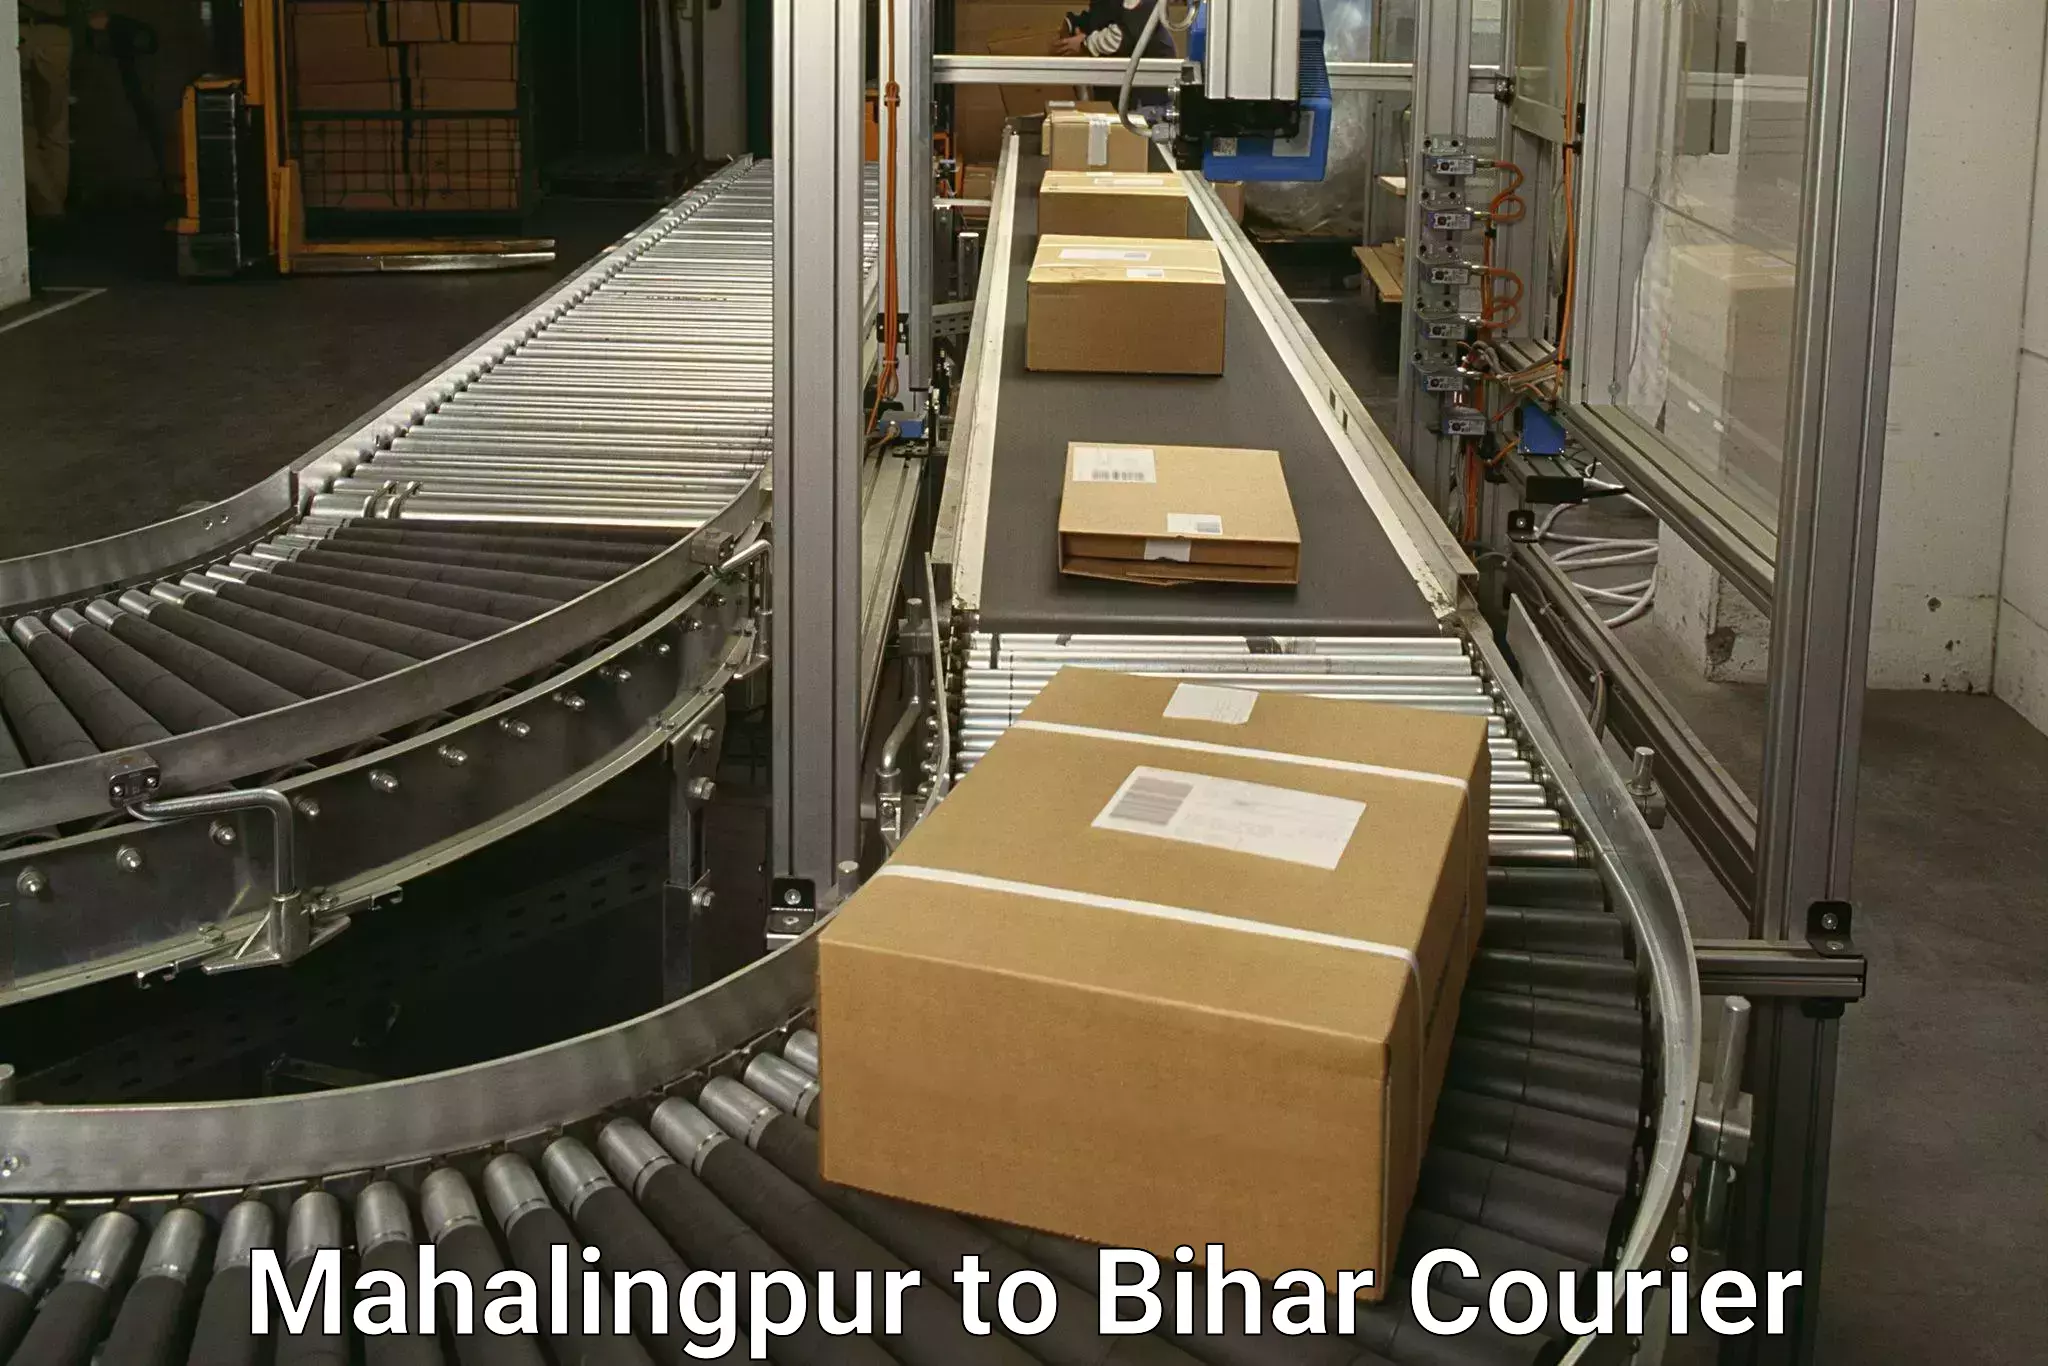 Holiday shipping services Mahalingpur to Bihar